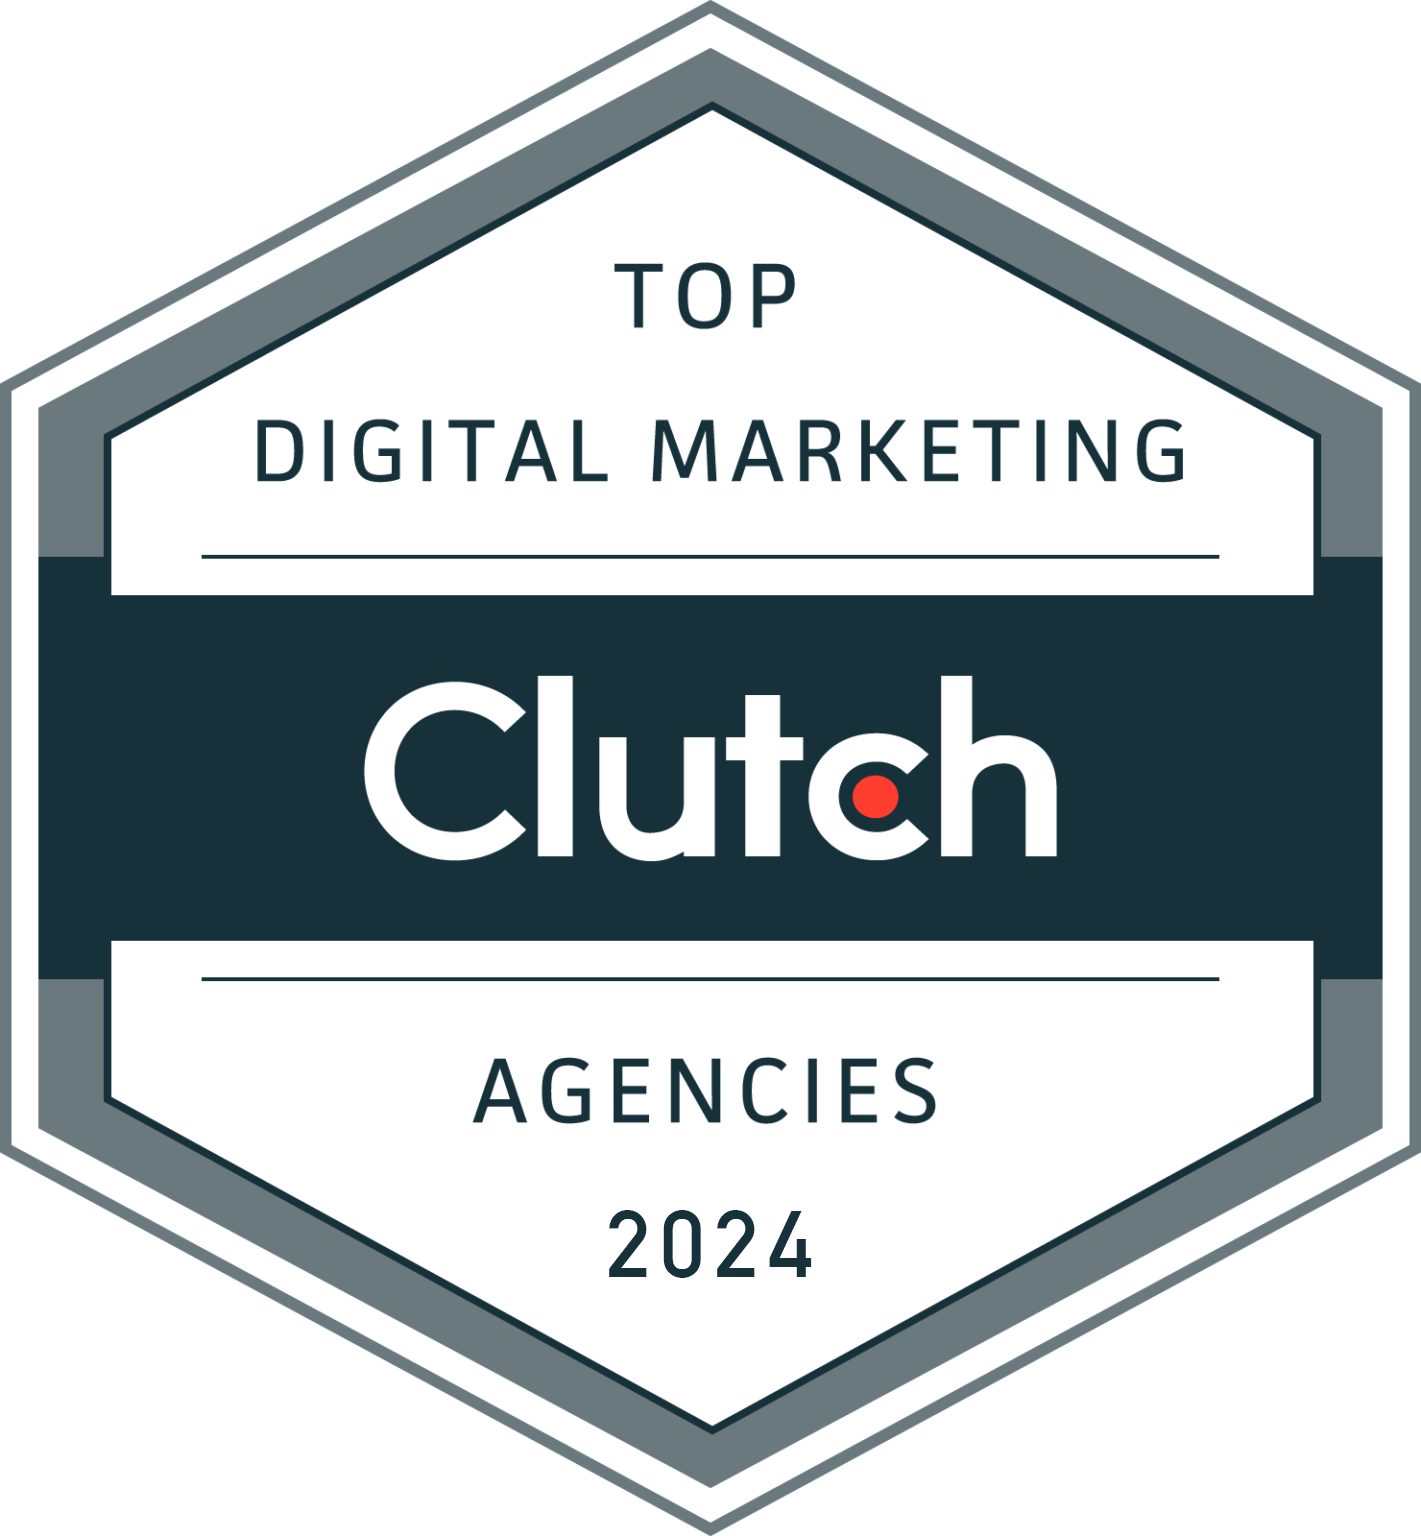 Top-Digital-Marketing-Agencies-2021-by-Clutch